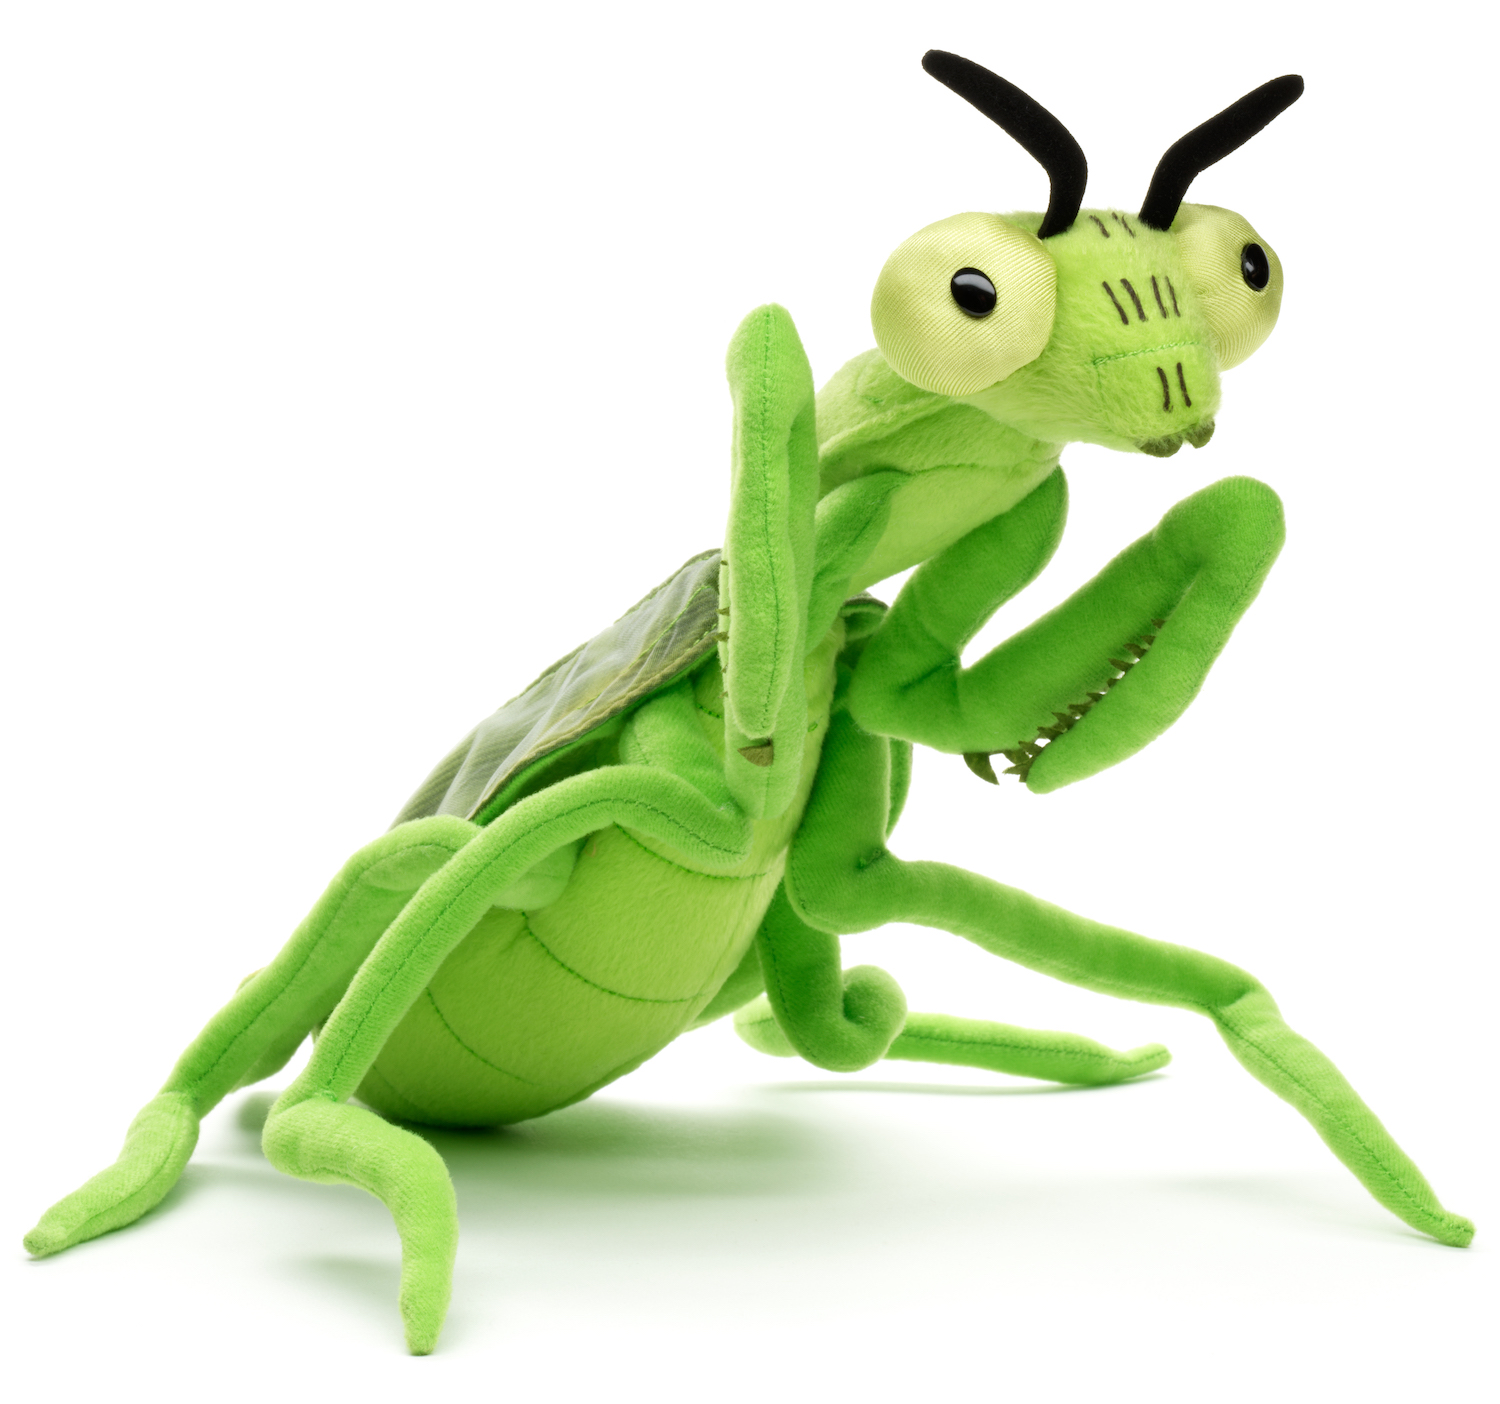  praying mantis - 34 cm (length)